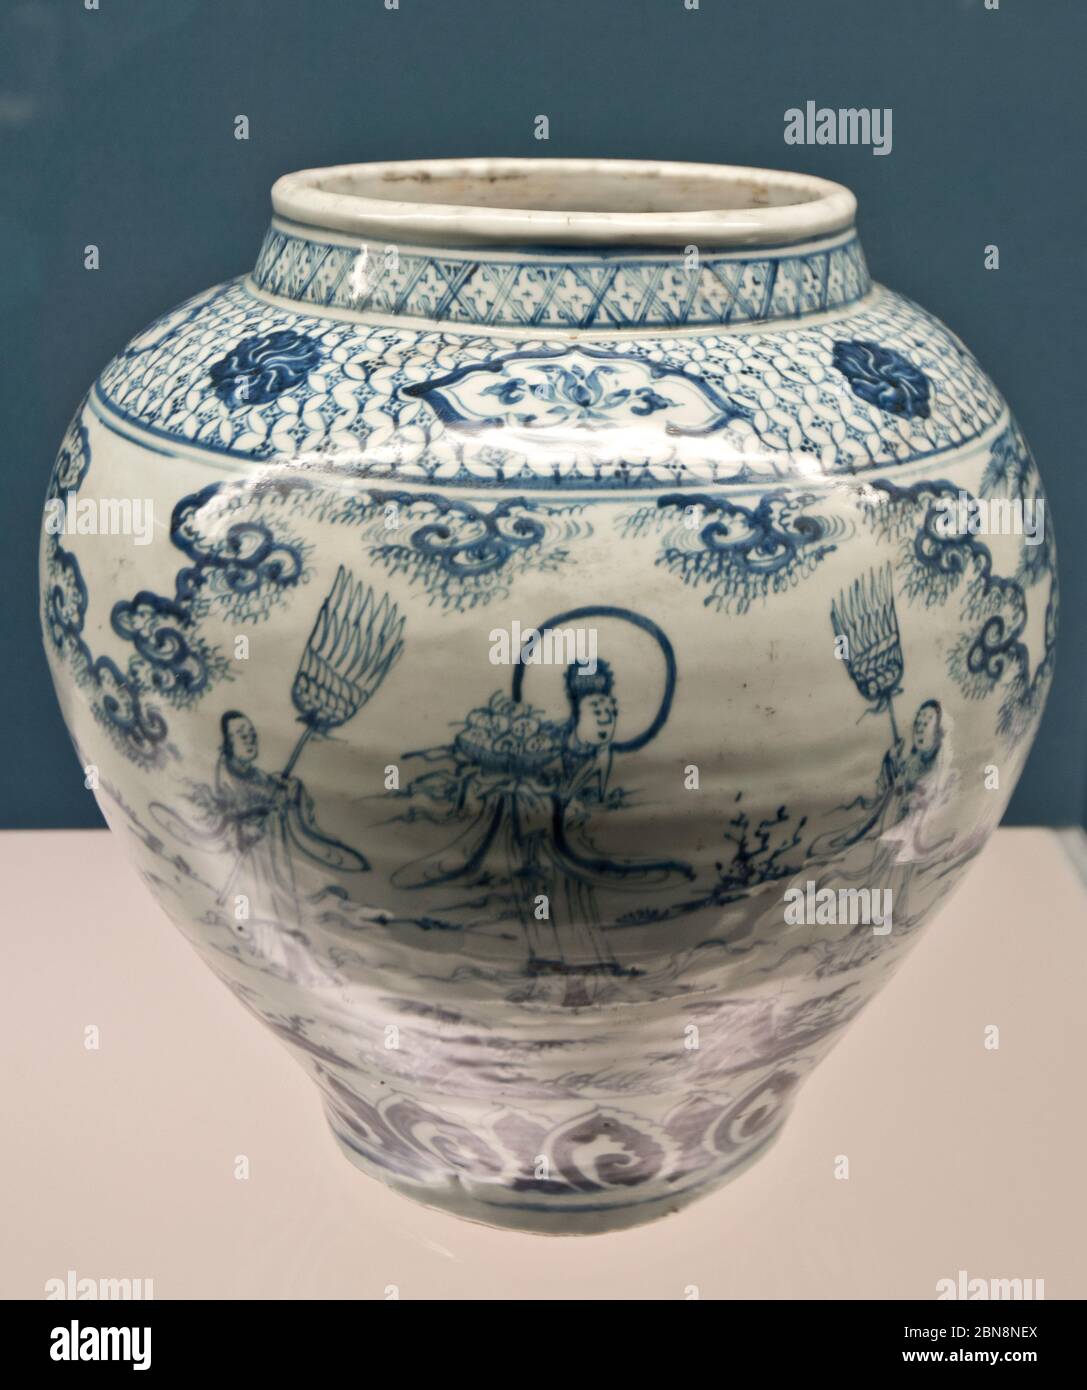 Porcelaine chinoise : pot bleu et blanc avec figures - dynastie Ming, Zhengtong - Tianshun Reign (1436-1464). Musée de Shanghai Banque D'Images